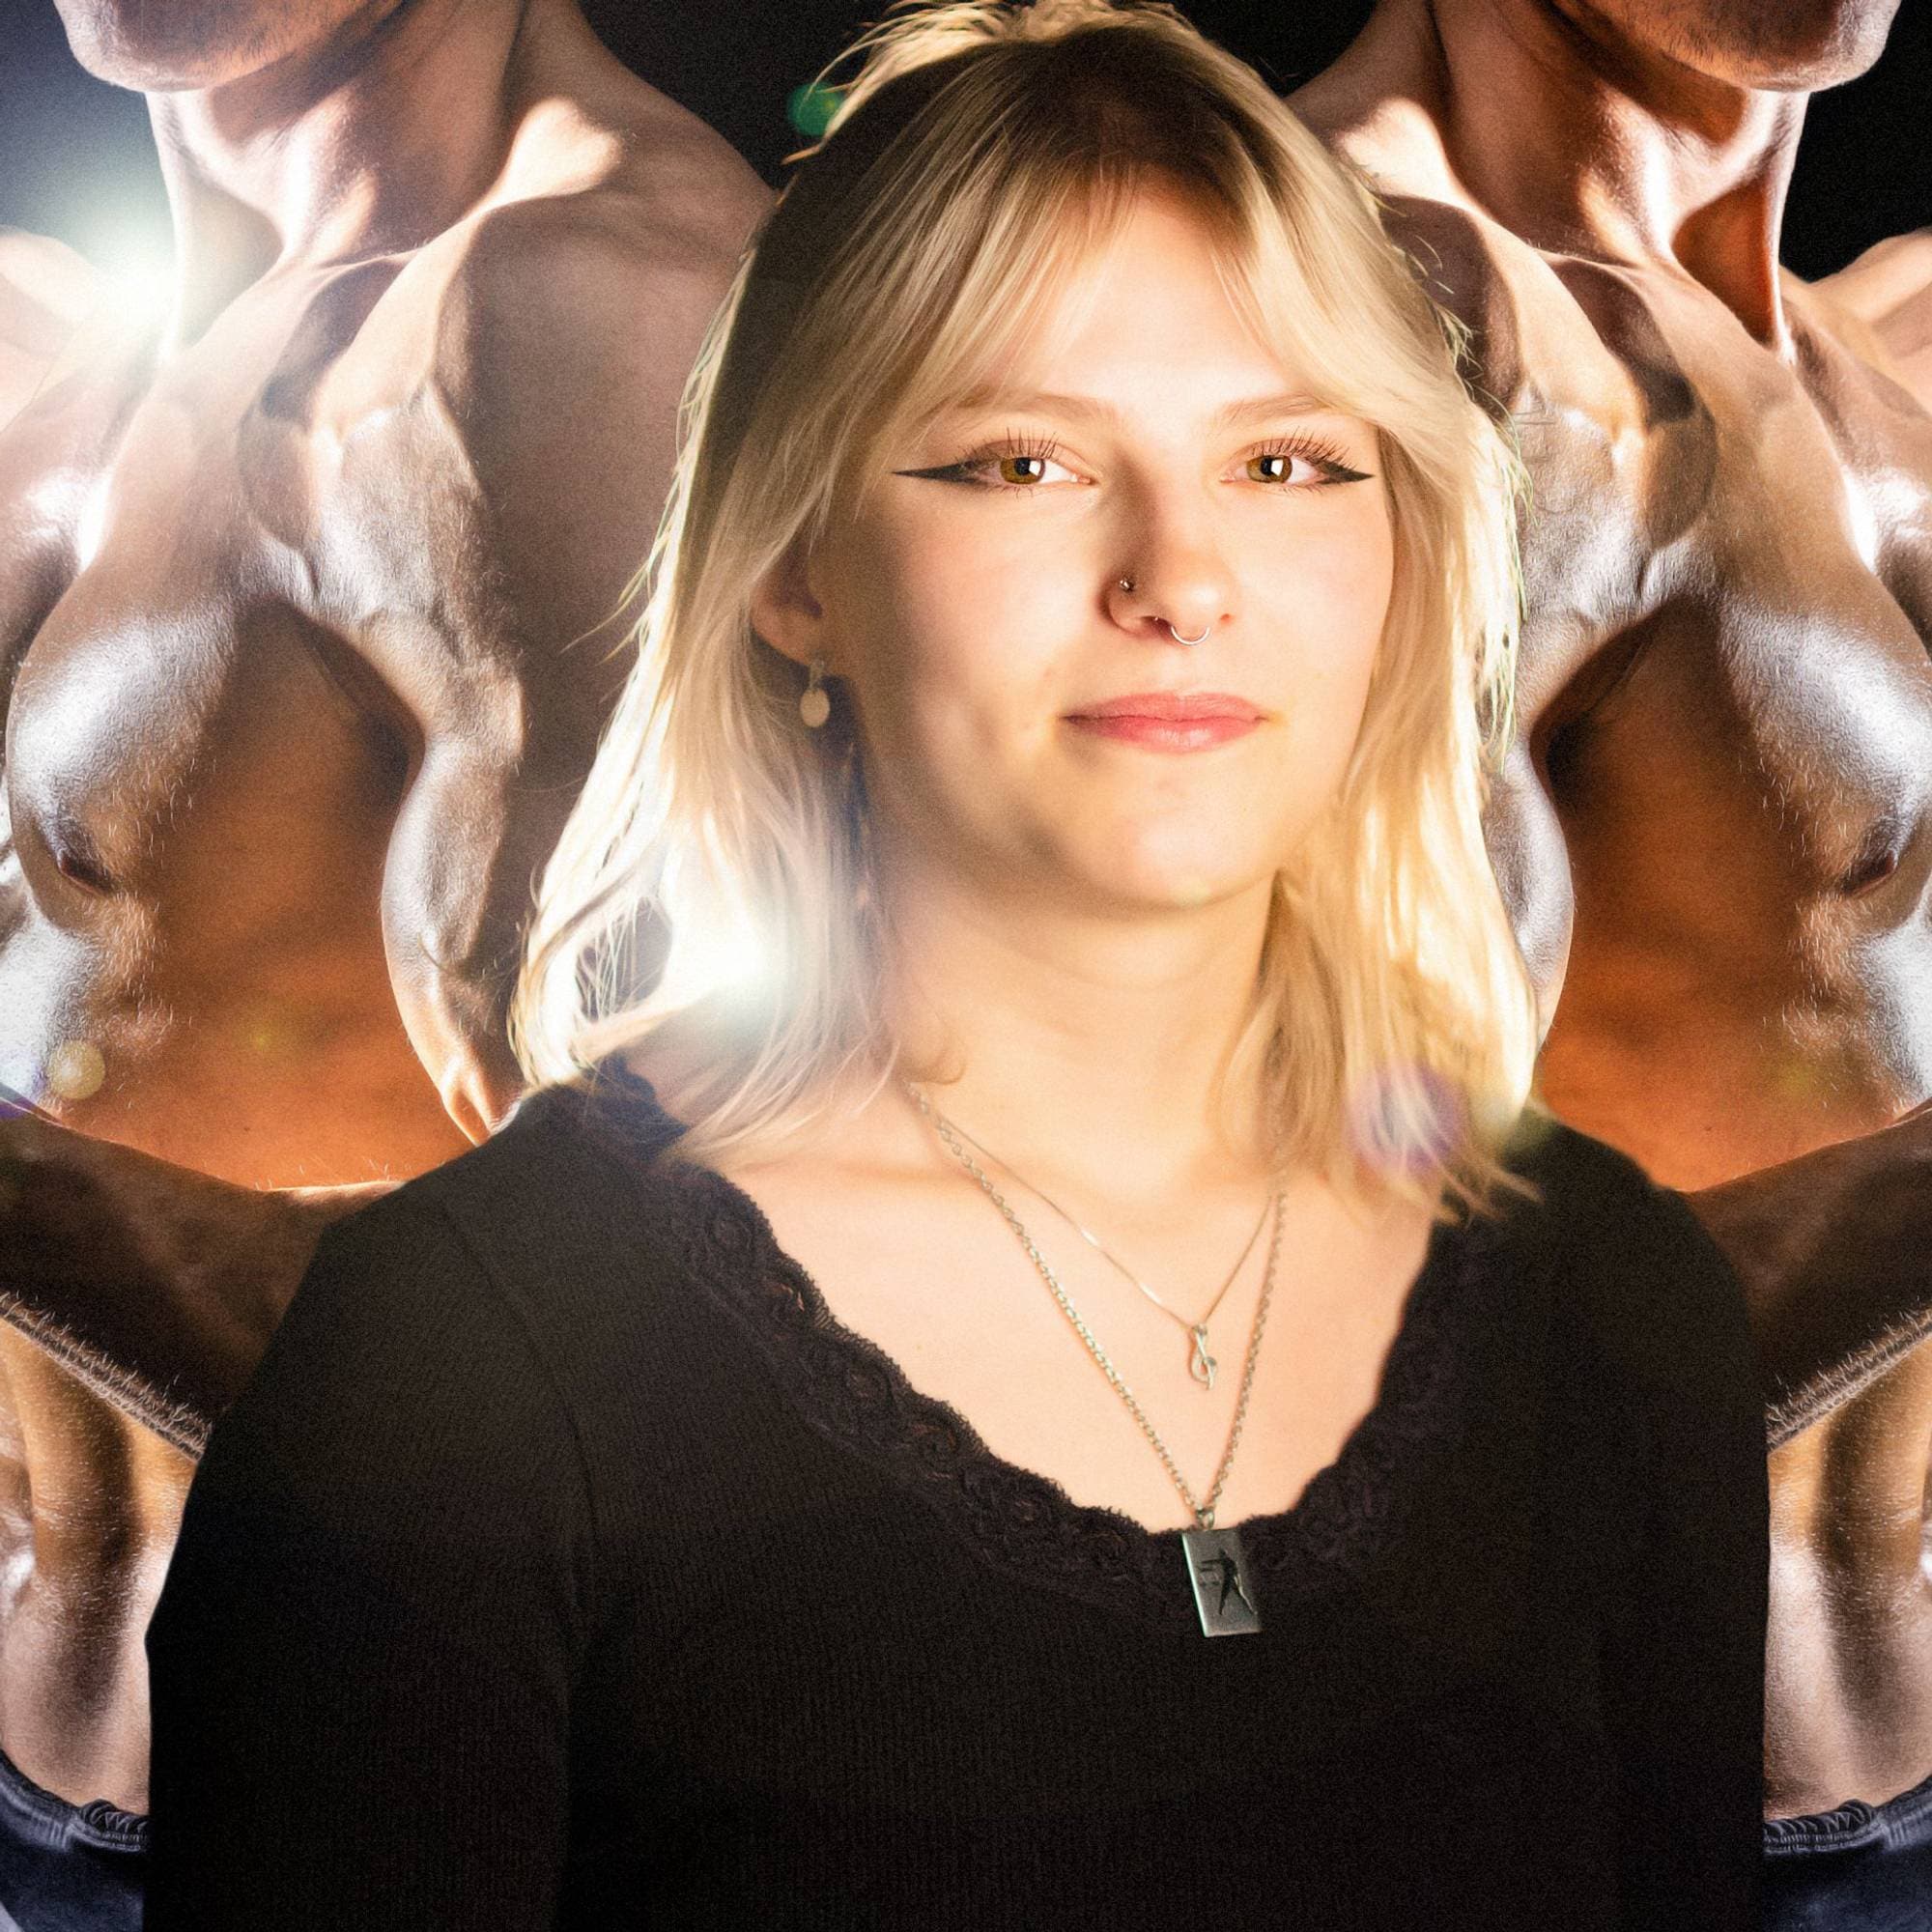 En jente med kort blondt hår står foran fire muskuløse mannekropper. 